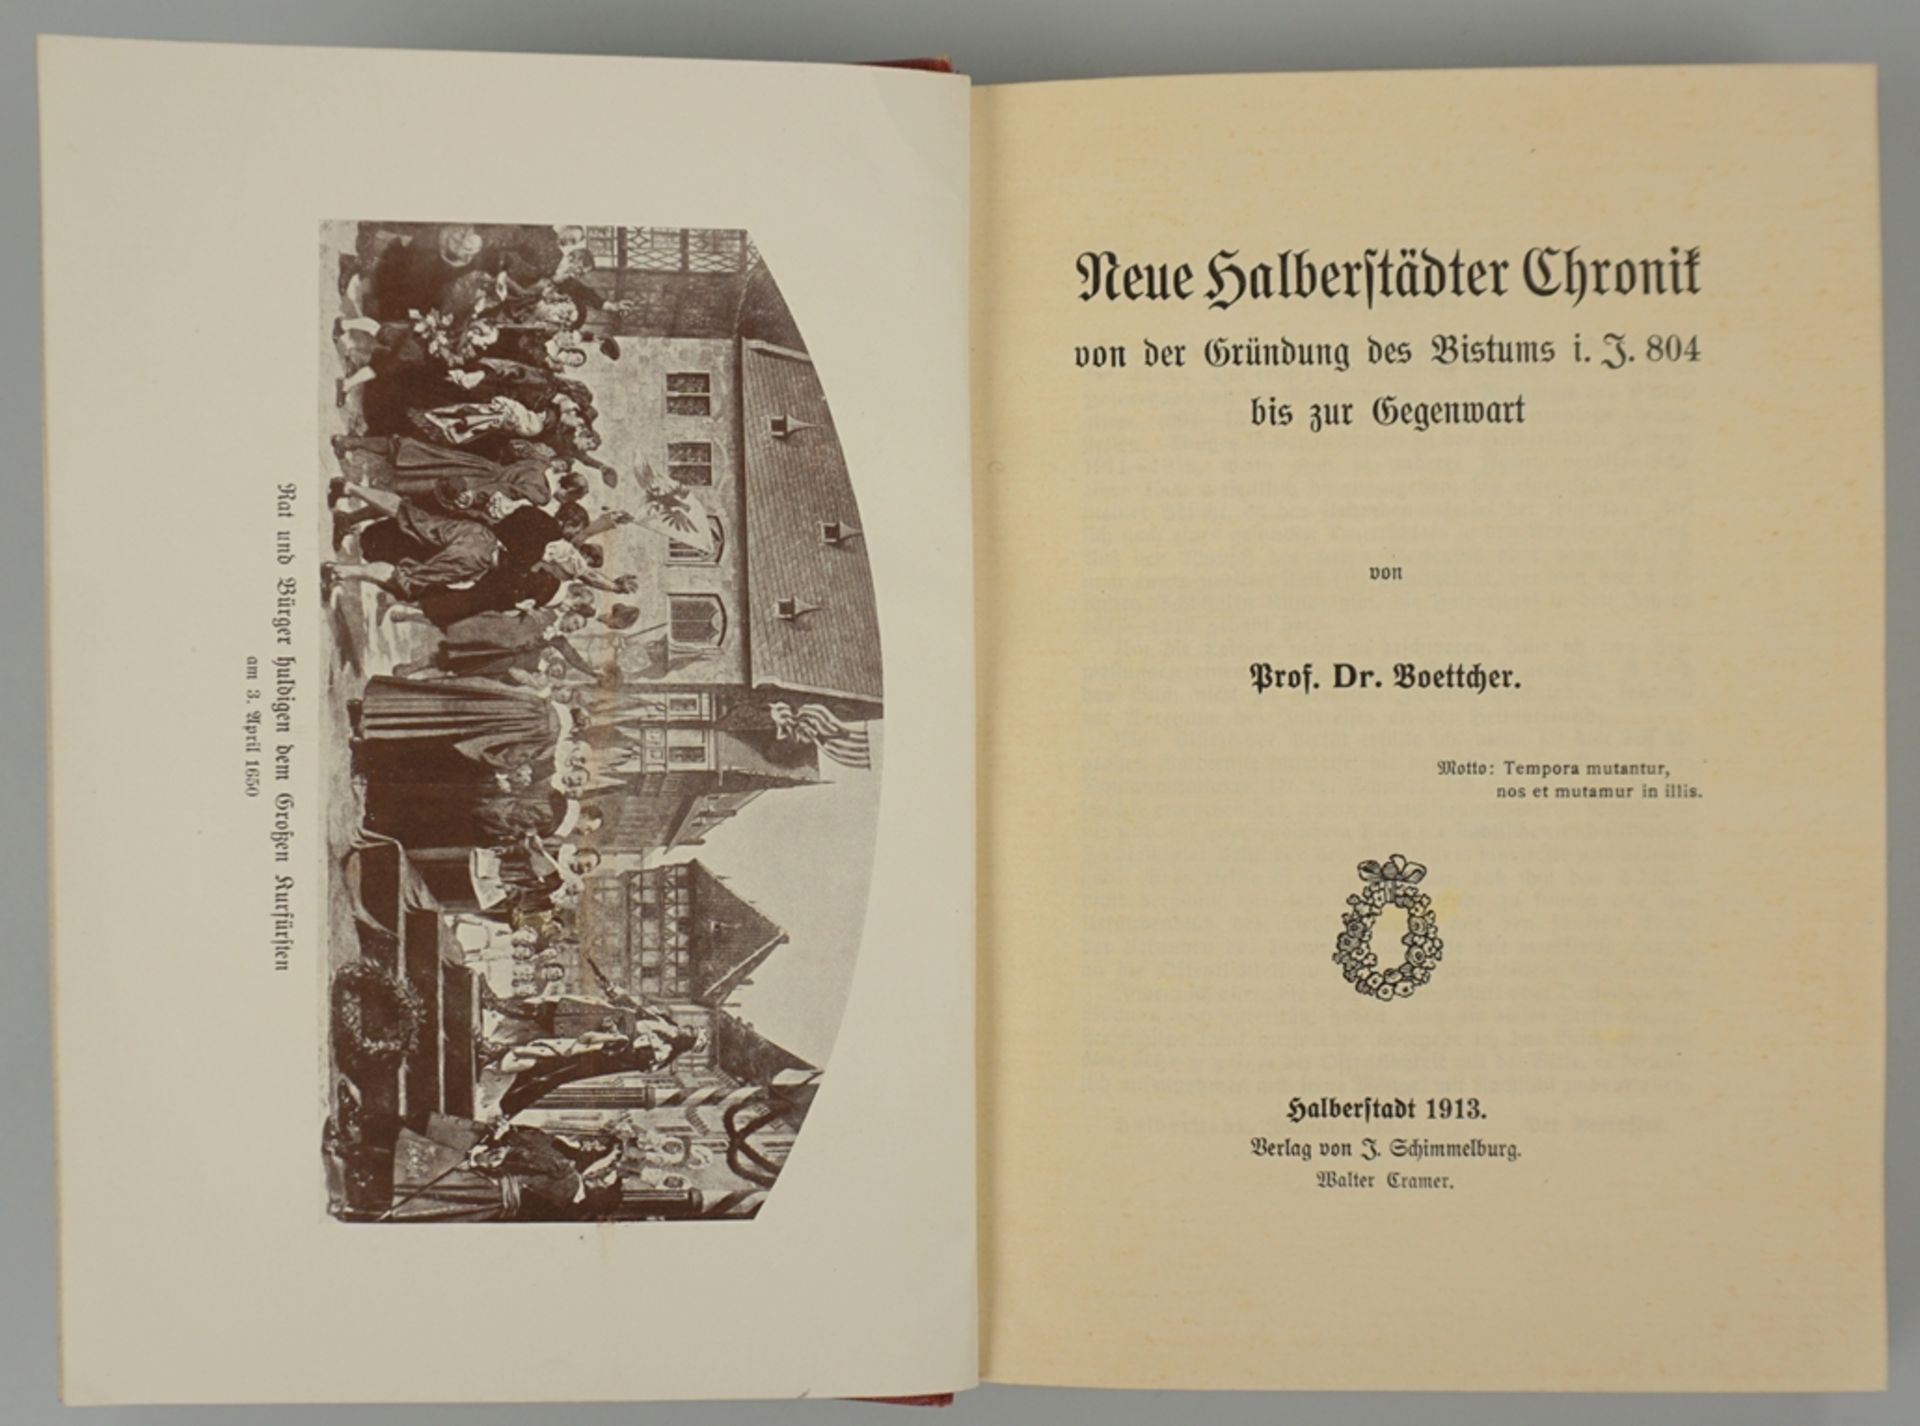 Neue Halberstädter Chronik von der Gründung des Bistums i. J. 804 bis zur Gegenwart, 1913 - Image 2 of 2